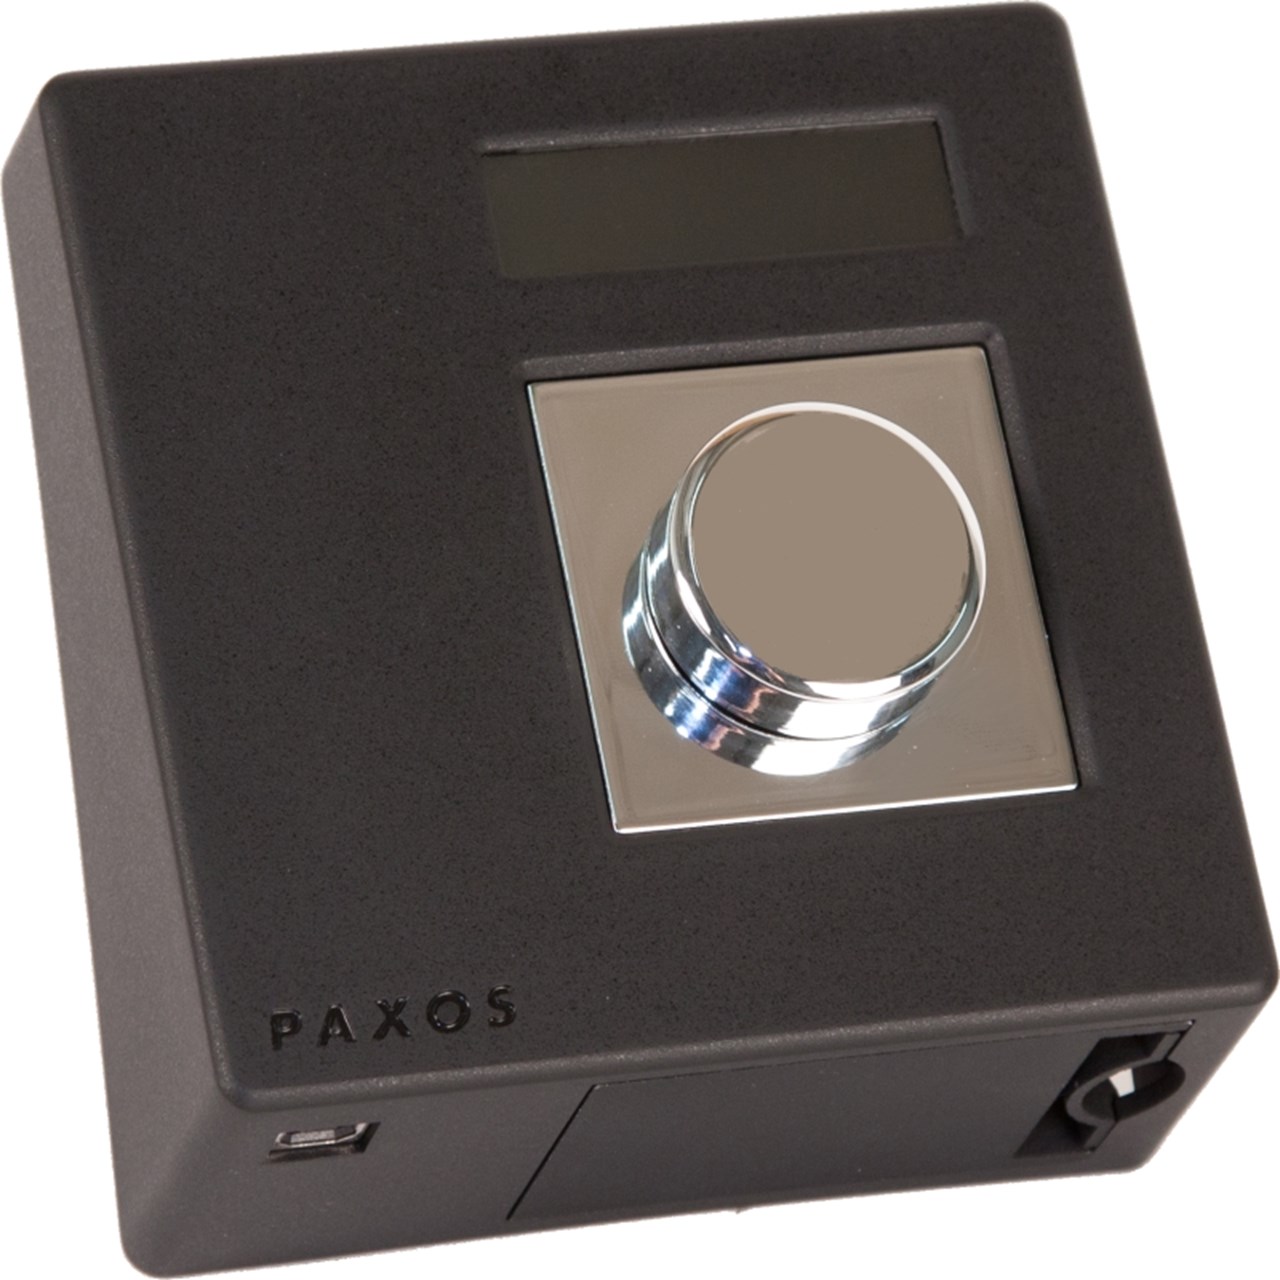 Sistema elettronico ridondante ad alta sicurezza Paxos Advance IP - pulsante